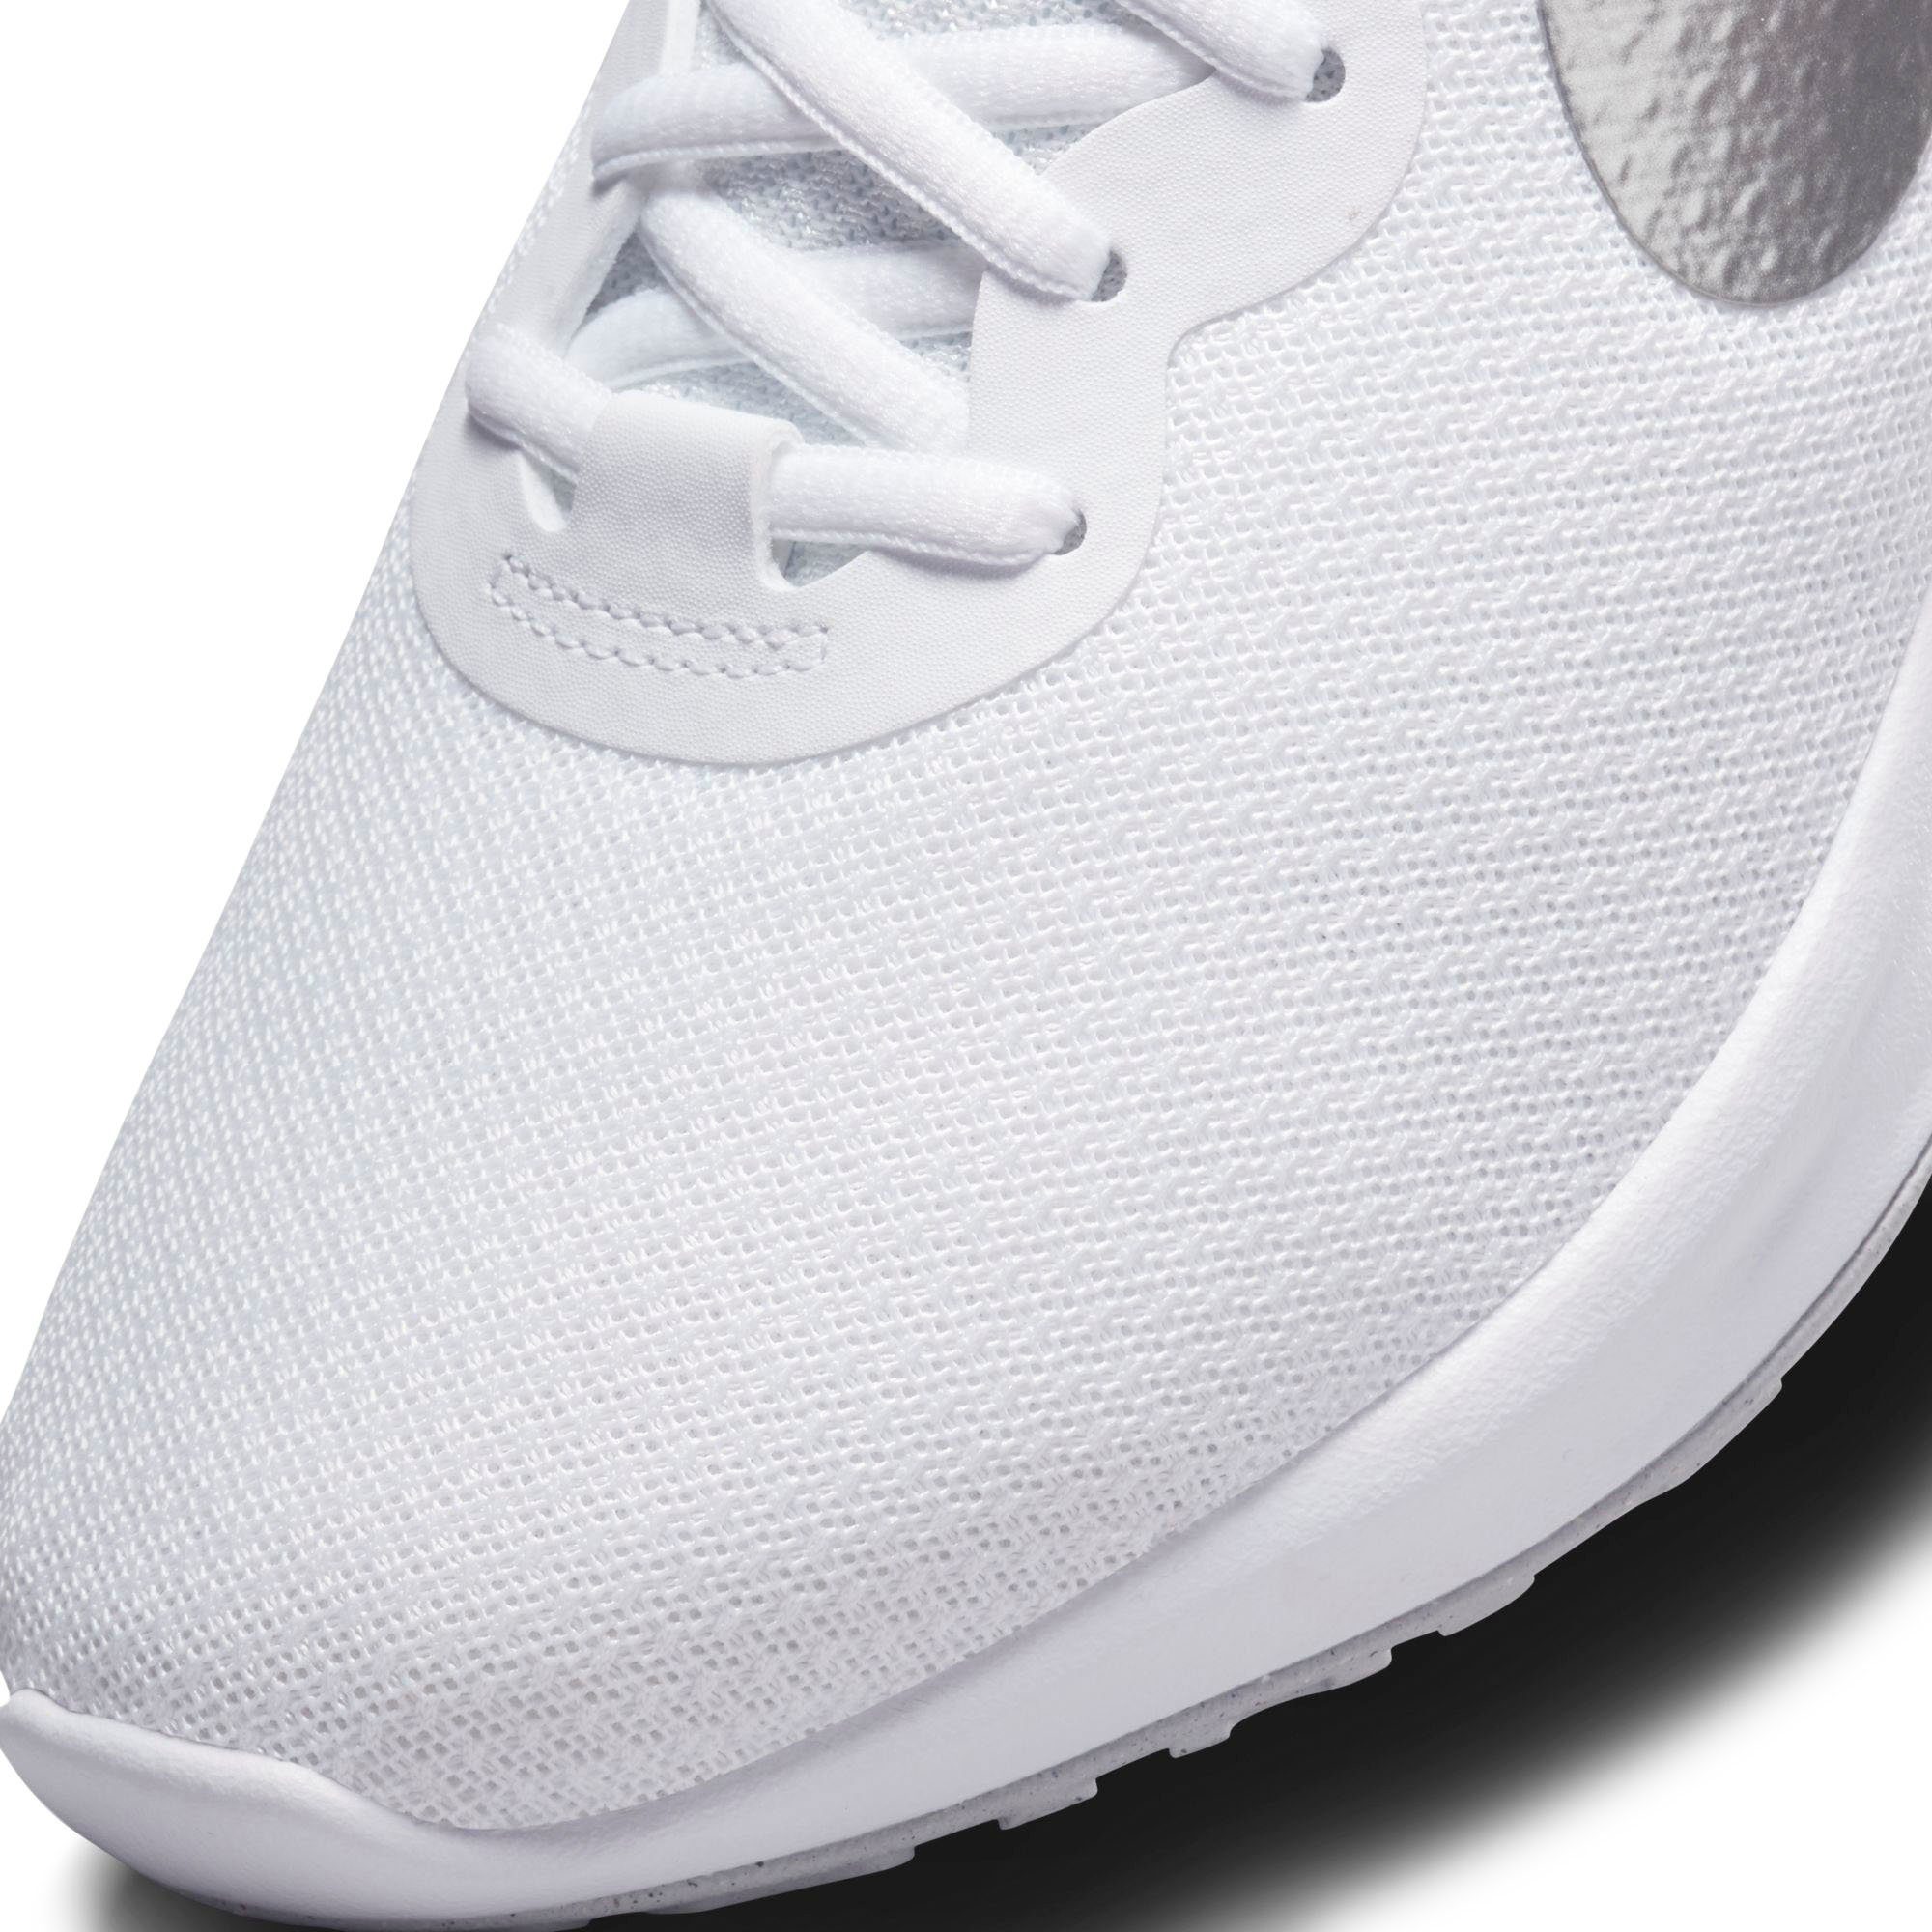 NEXT NATURE Nike Laufschuh weiß-silberfarben REVOLUTION 6